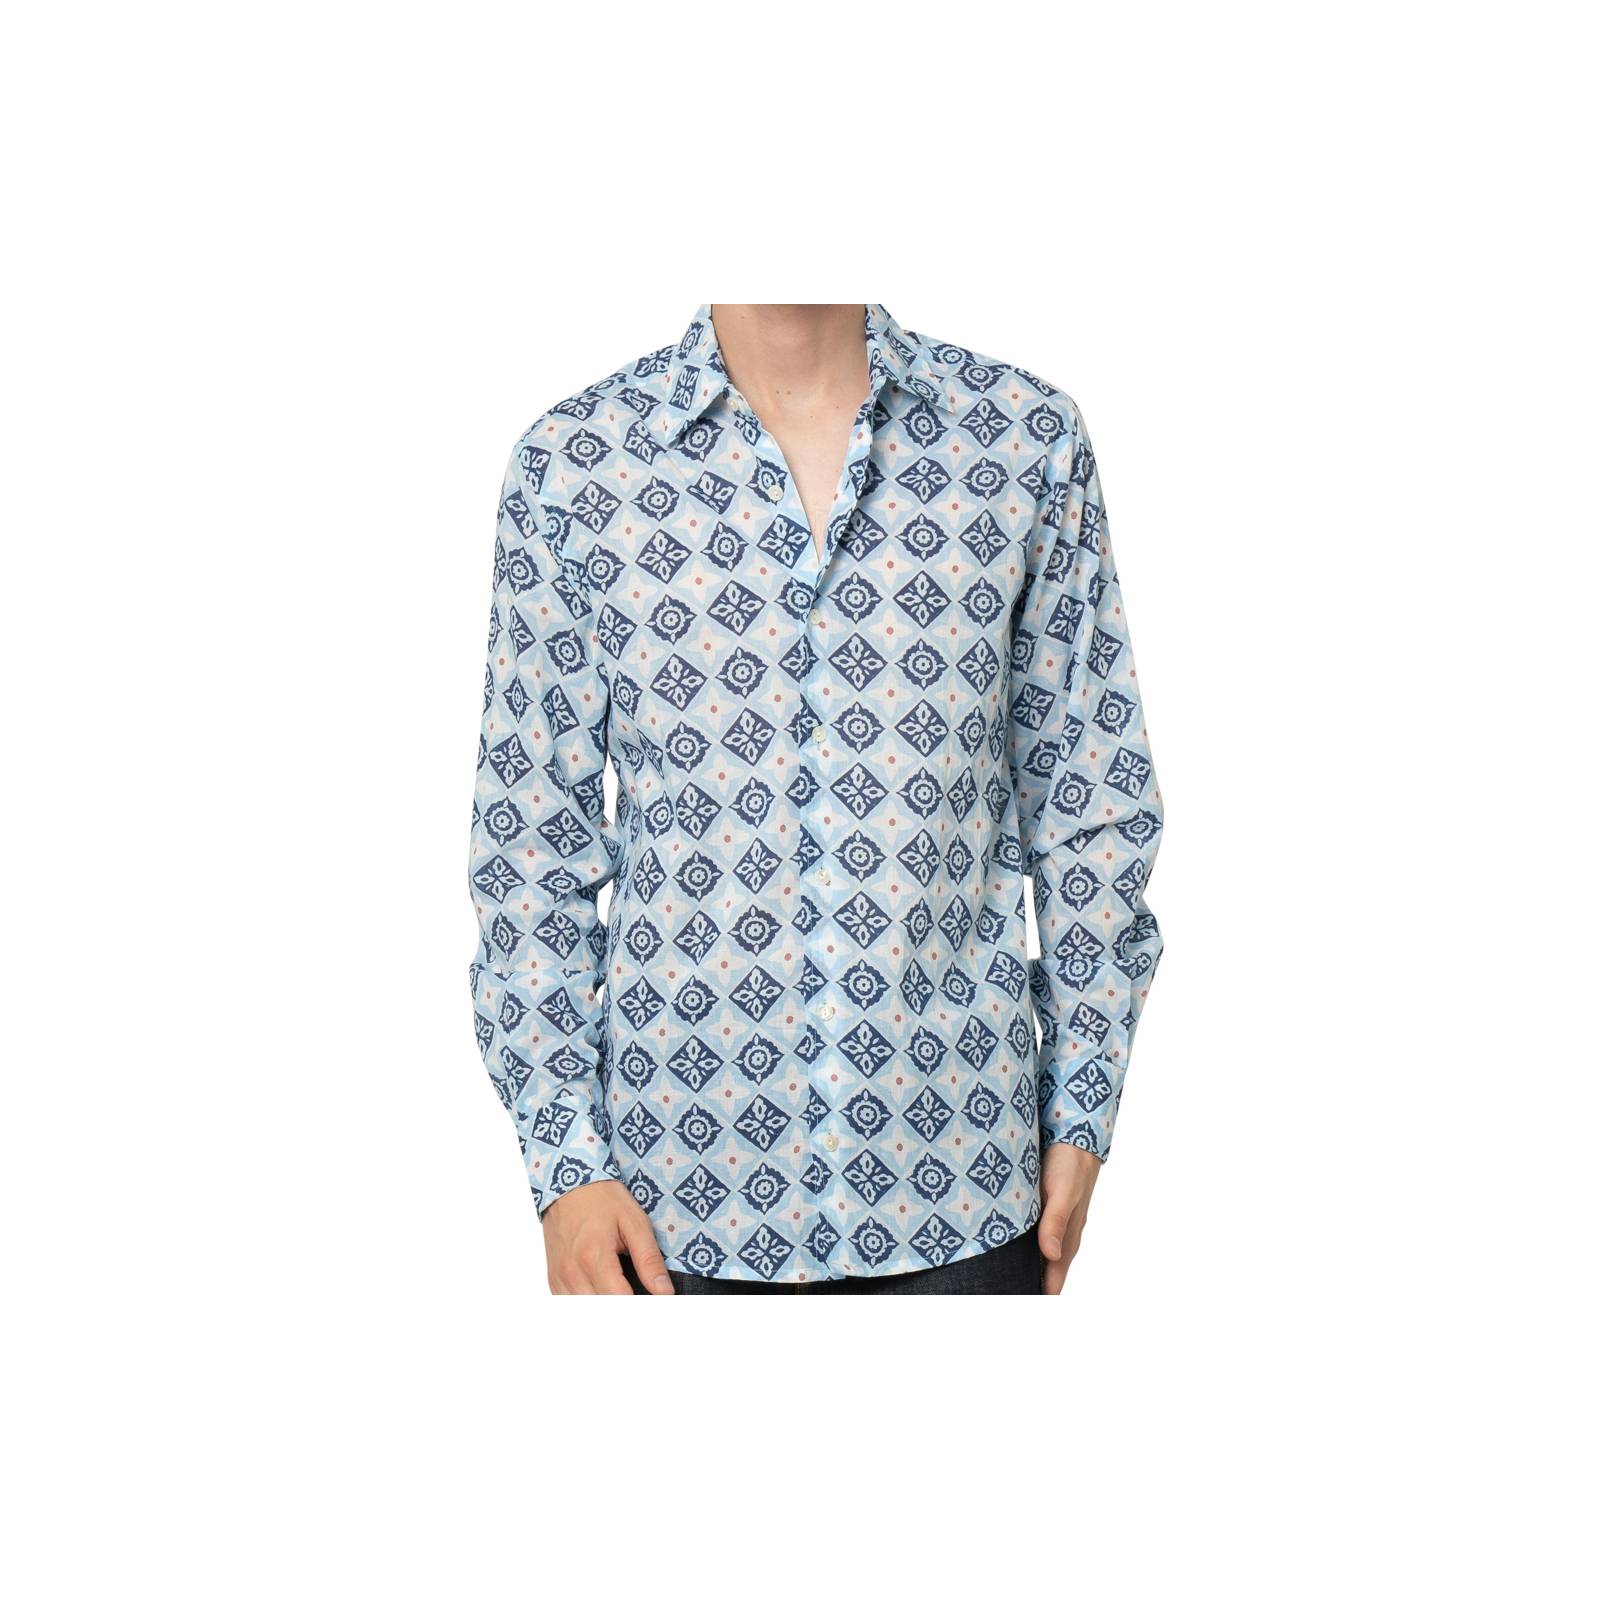 Chemises et blouses Chemise femme Tily 100% Cotton Ethnique VT3800W BLUE